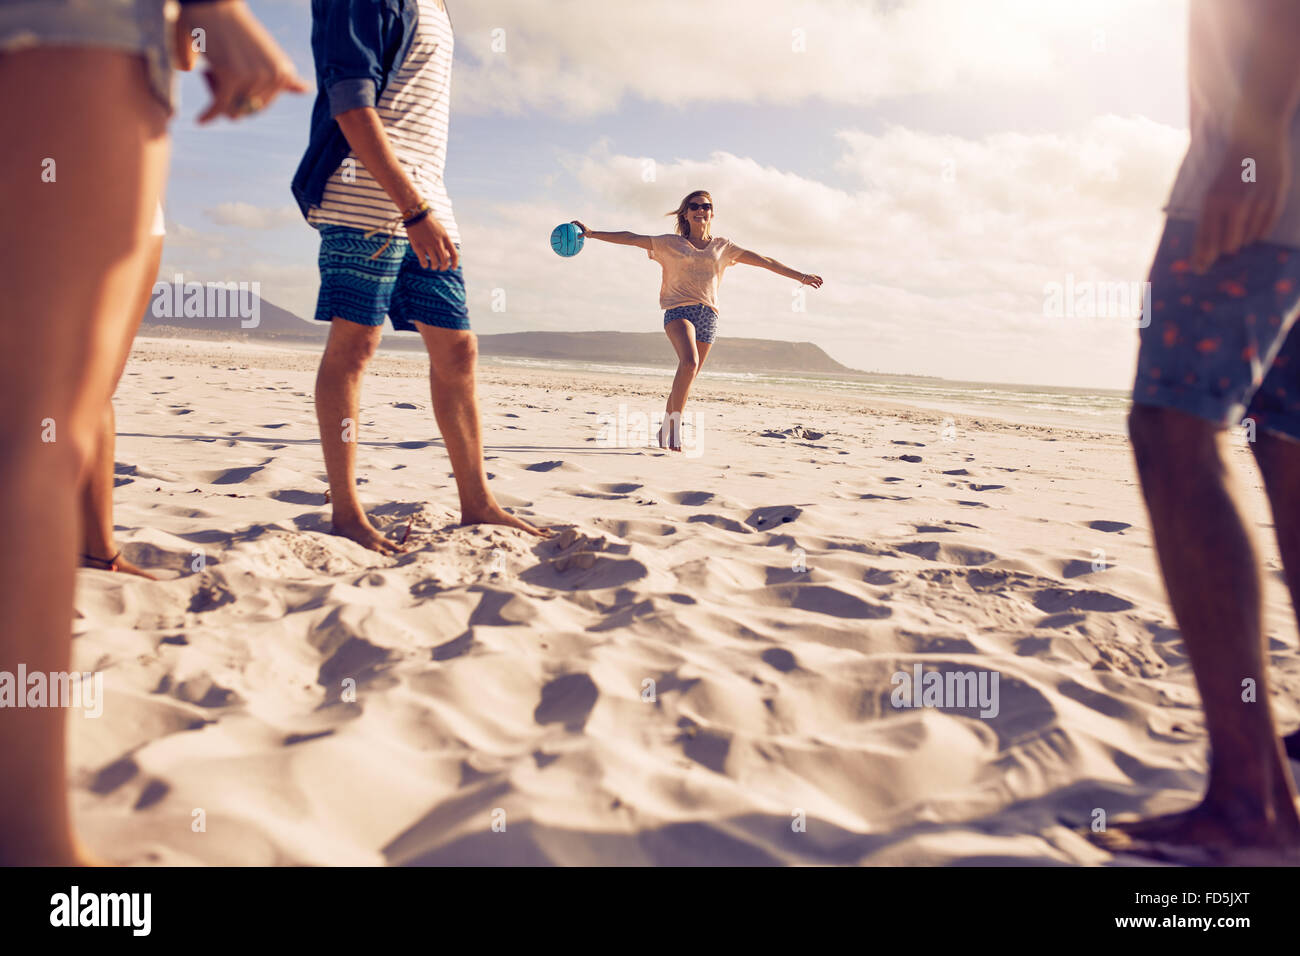 Low angle view of young woman running sur la plage avec un ballon avec ses amis debout devant. Groupe d'amis profitant de hol Banque D'Images